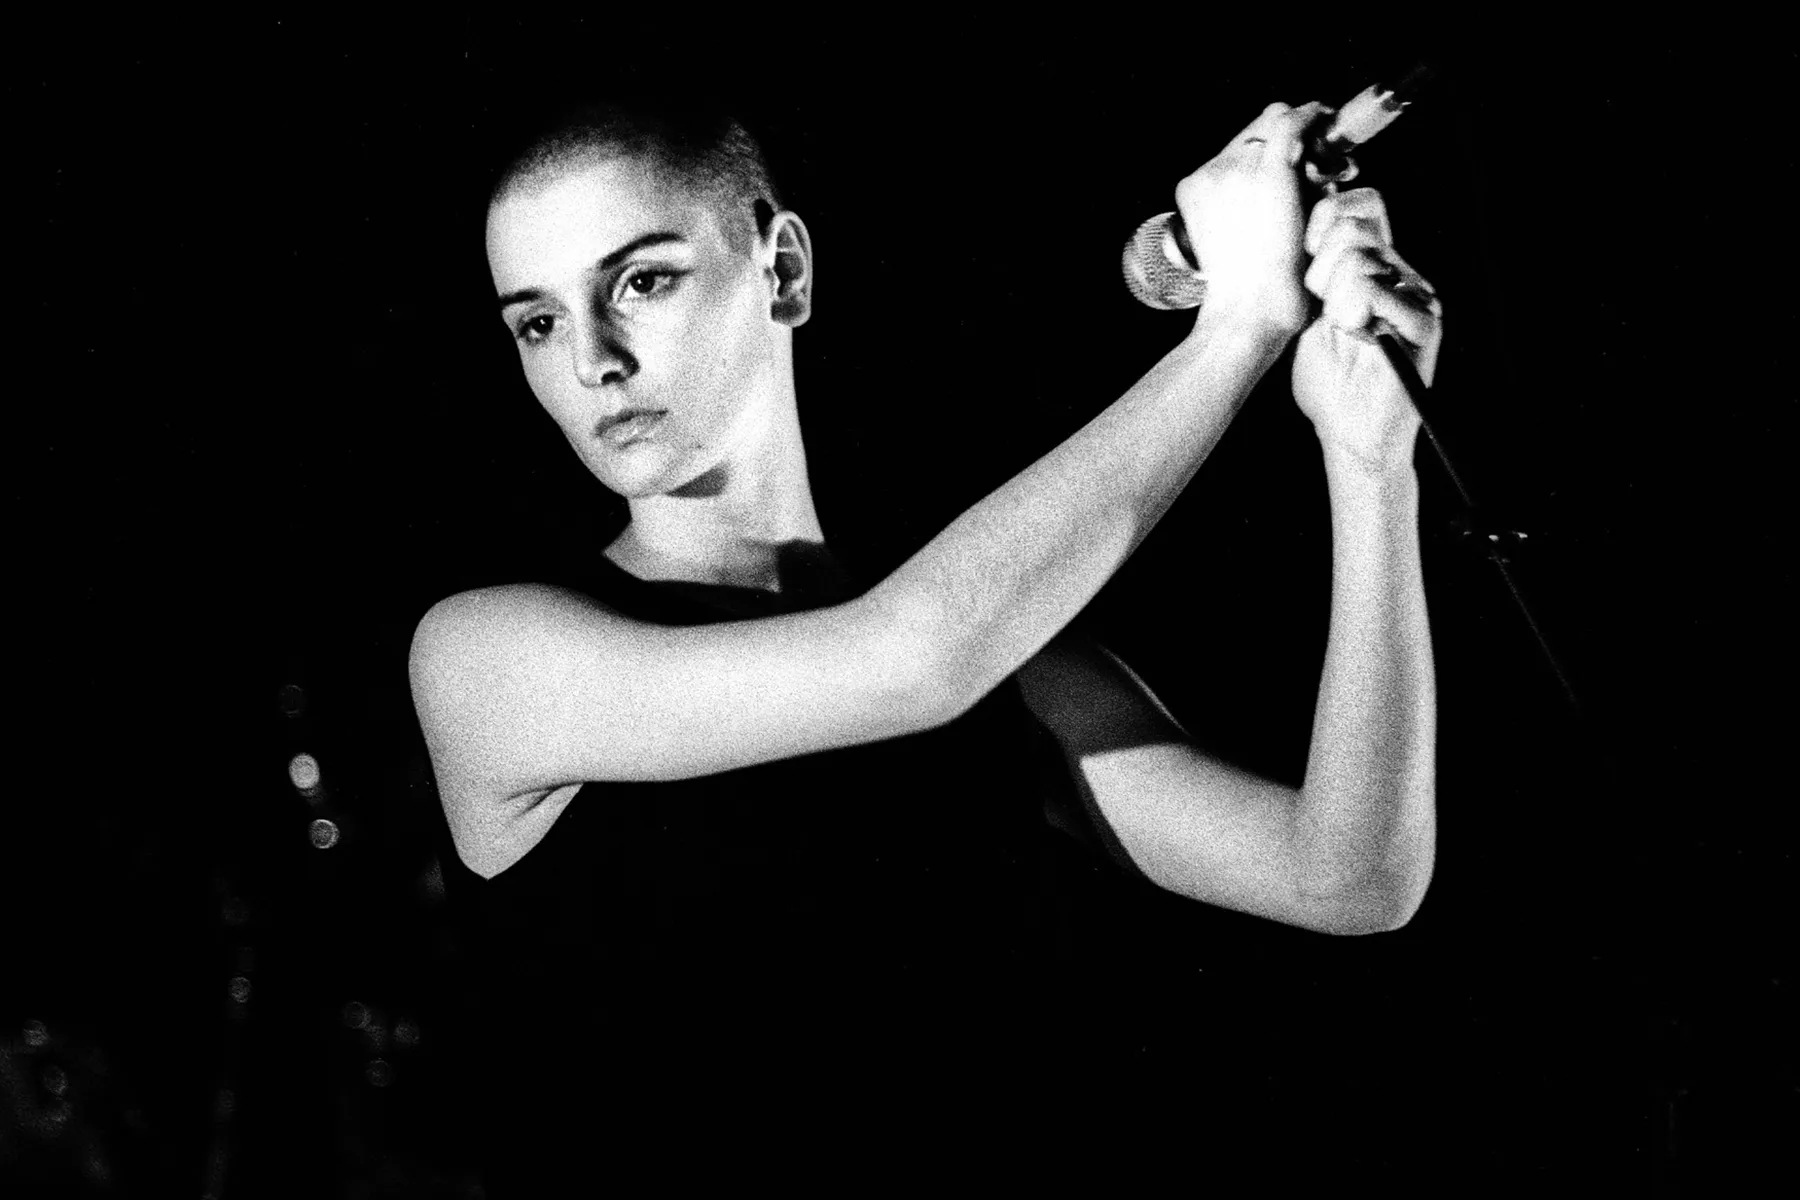 爱尔兰创作歌手Sinéad O'Connor(西妮德·奥康纳)1987-2022年发行专辑、EP、单曲、现场辑合集[无损FLAC/10.00GB]百度云盘打包下载 影音资源 第2张